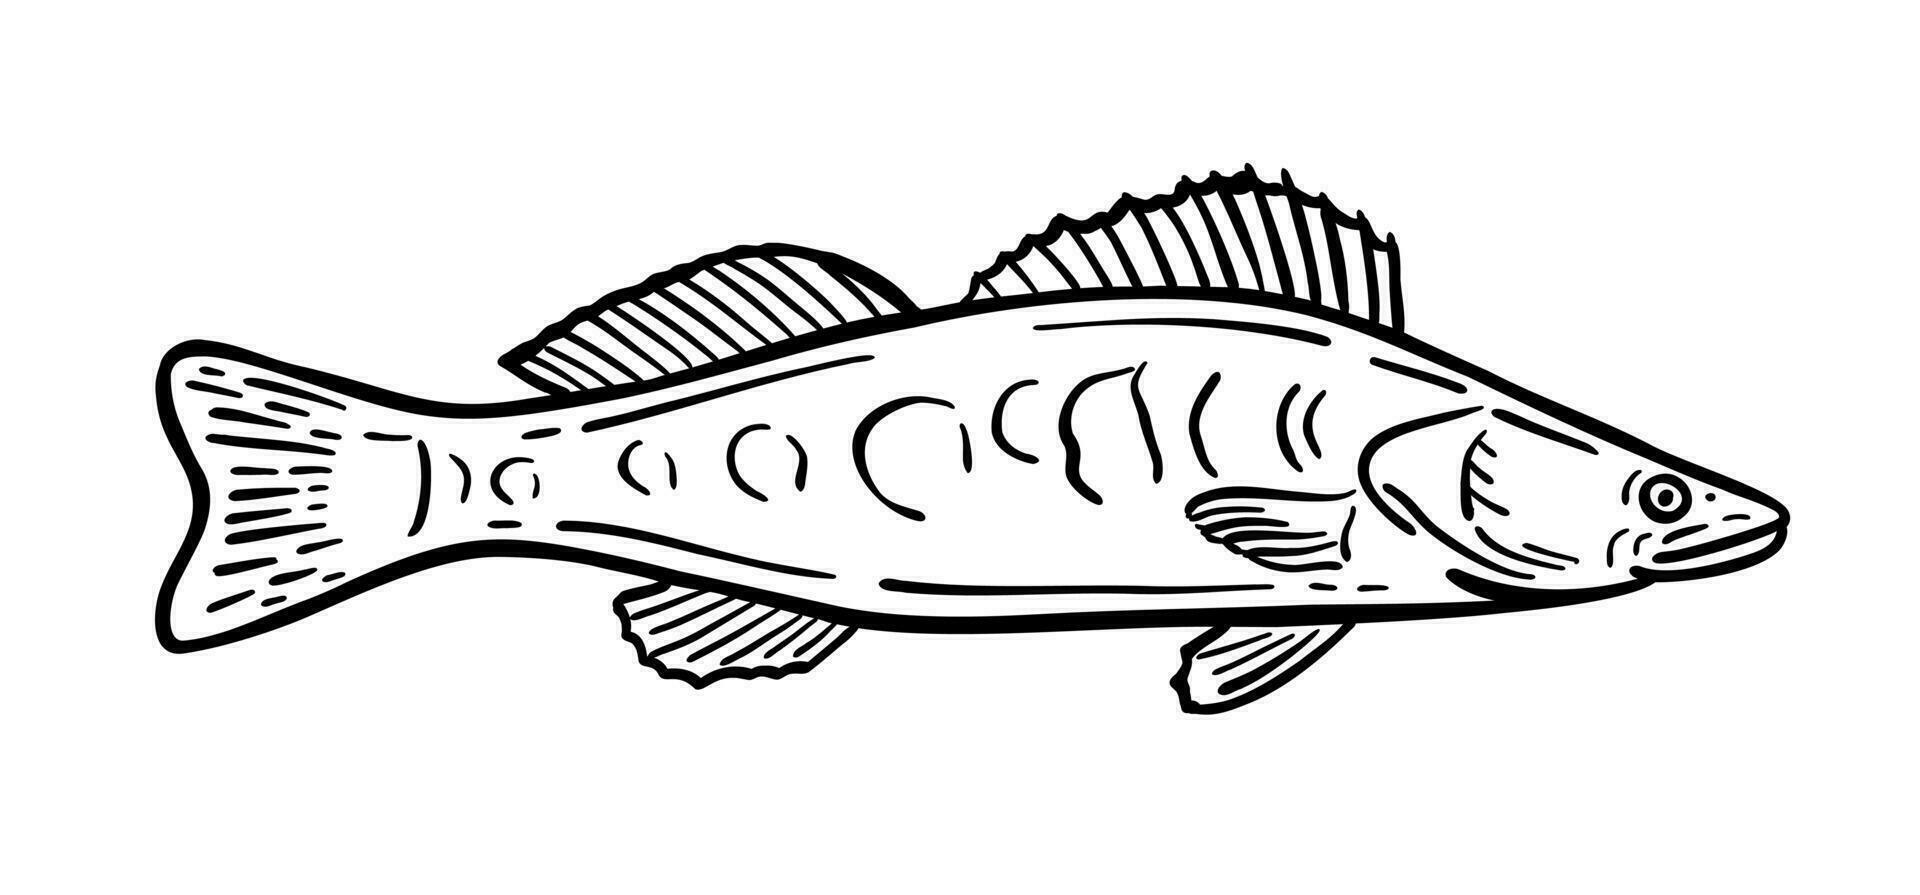 vis is een inwoner van de zee. vector illustratie in tekening stijl